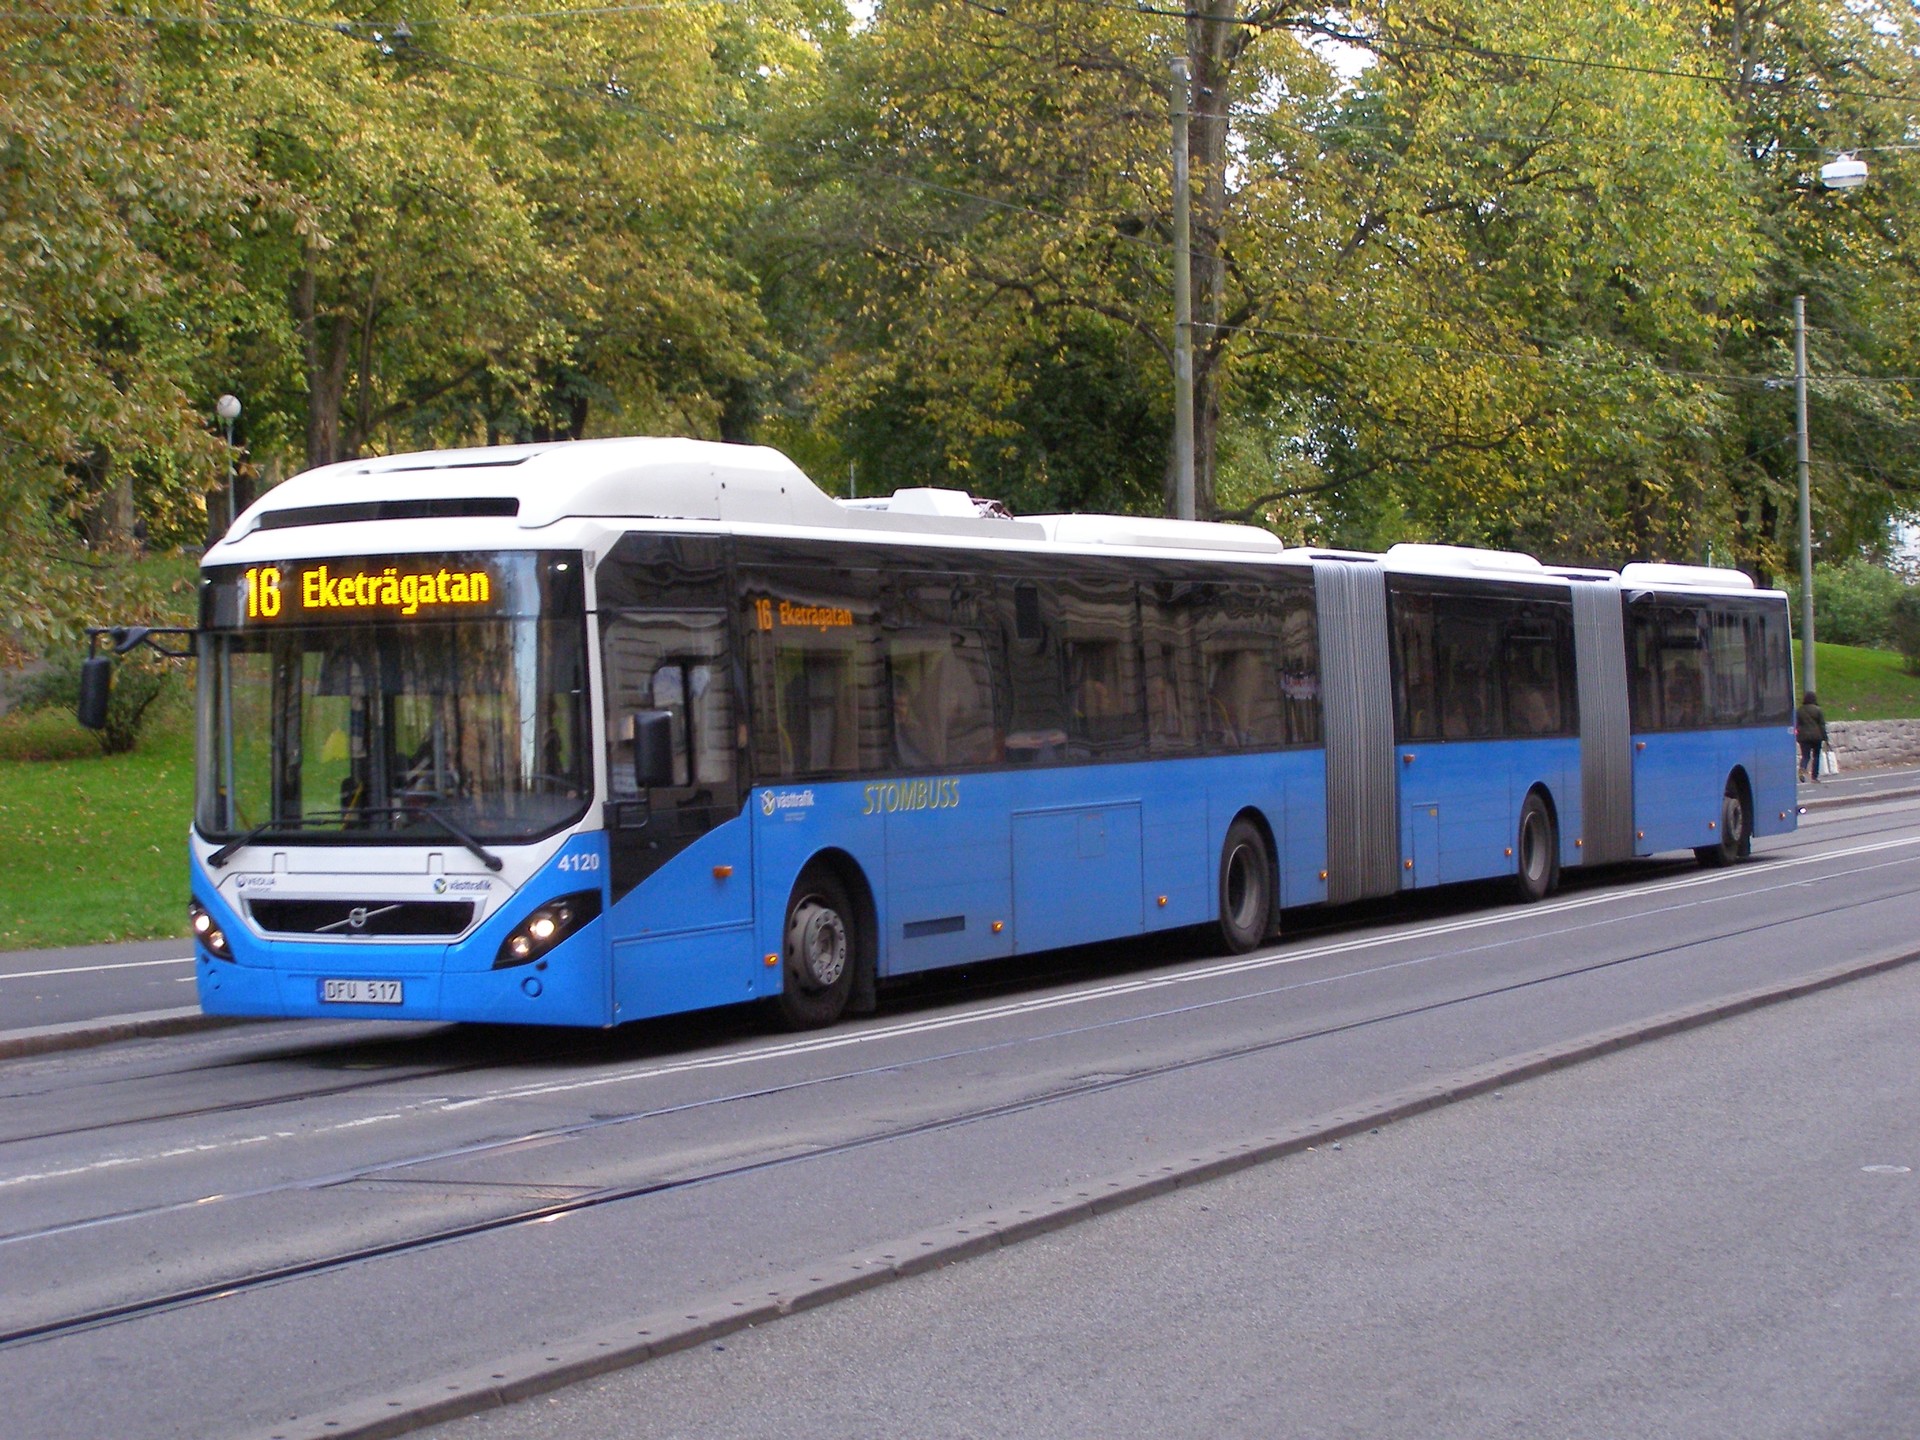 The magic of public transport in Gothenburg